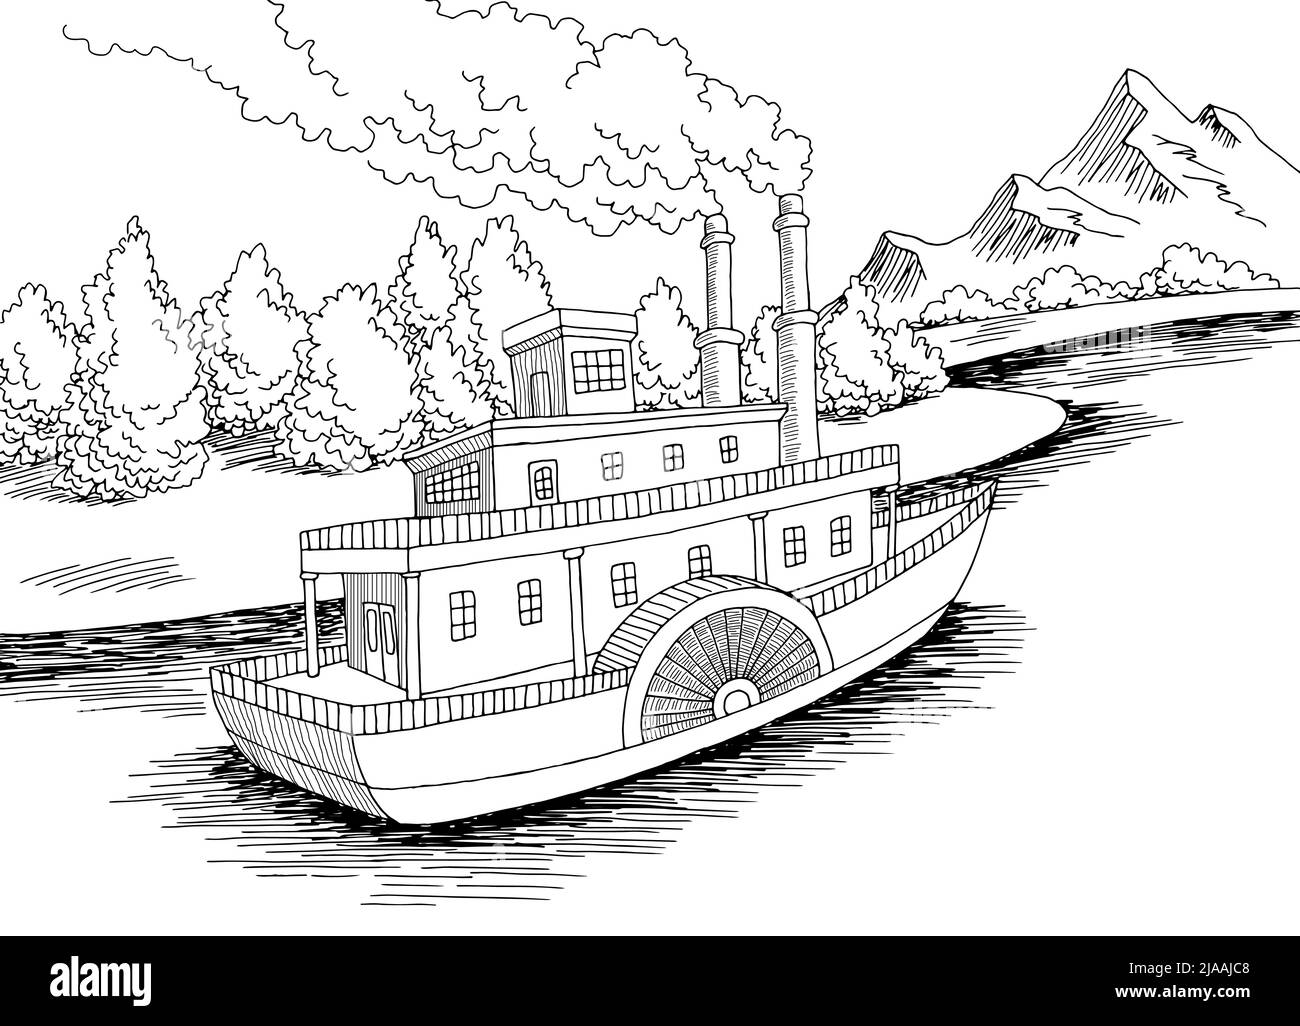 Schaufelraddampfer Schiff Grafik schwarz weiß Landschaft Skizze Illustration Vektor Stock Vektor